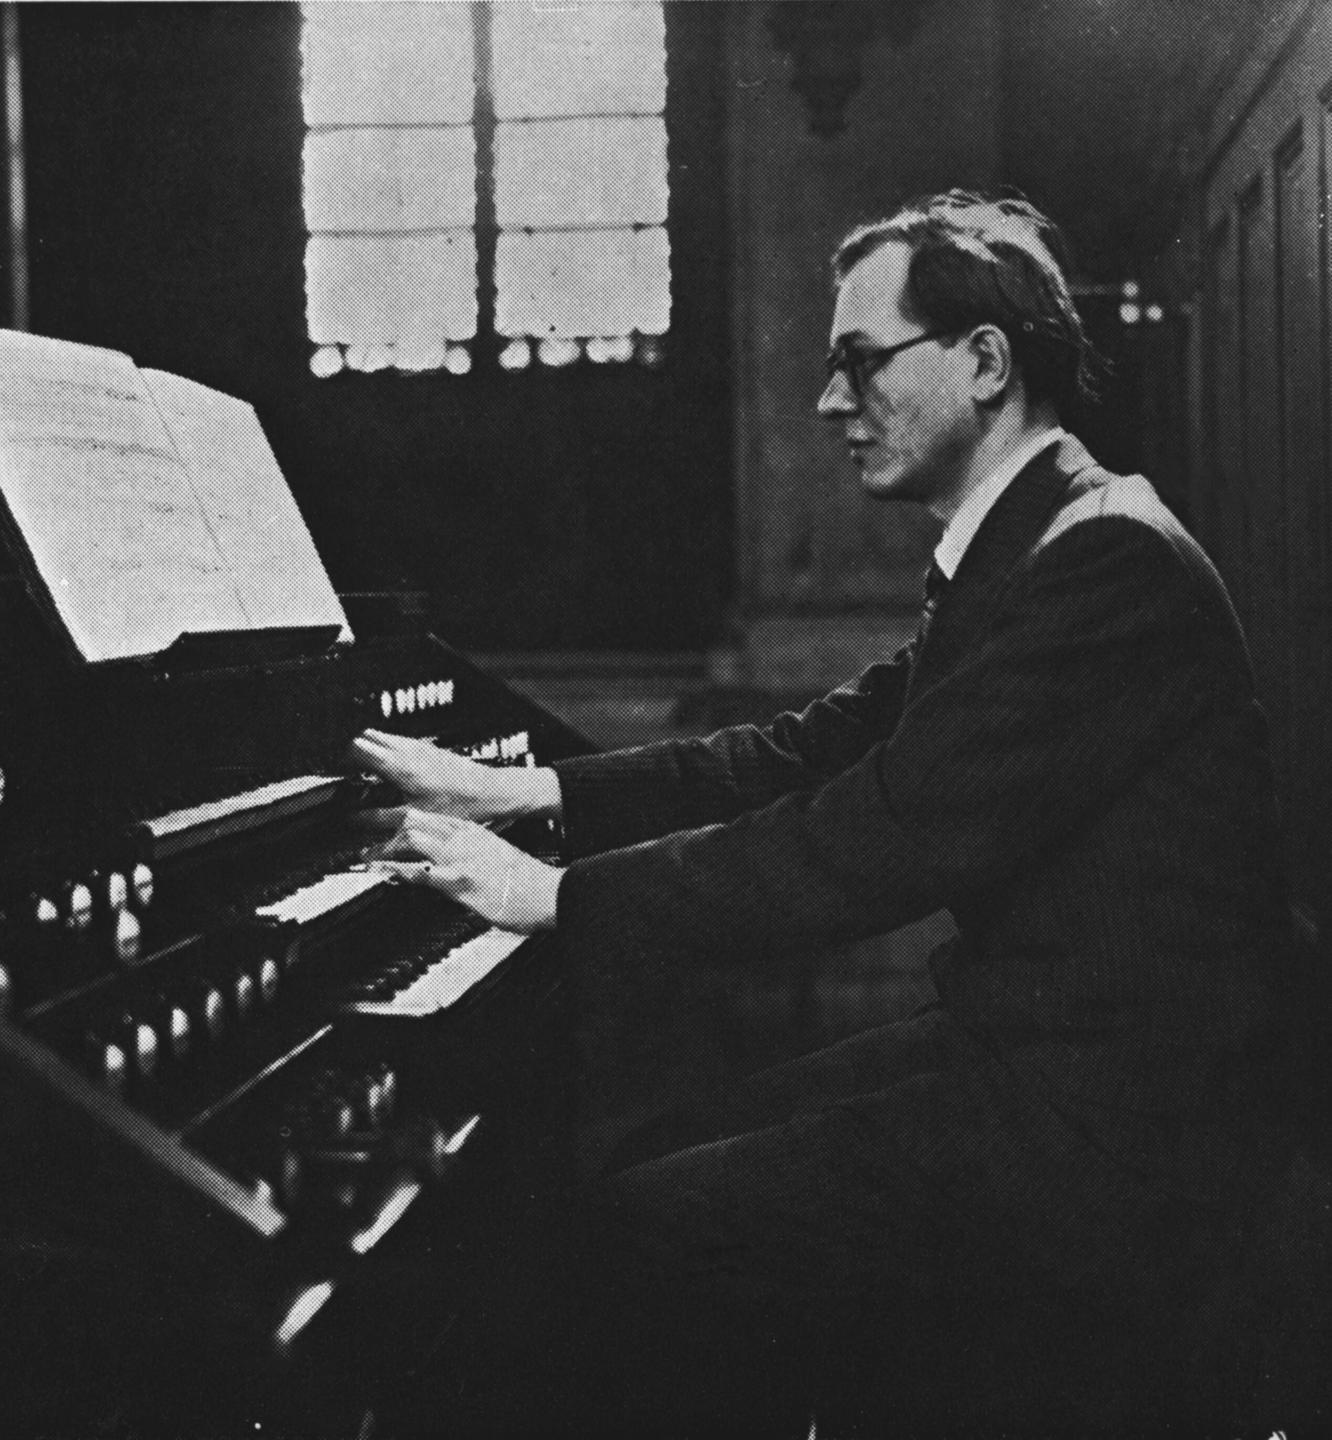 Olivier Messiaen sitzt als junger Mann mit Brille auf einer undatierten Fotografie in schwarz-weiß an einer Orgel.